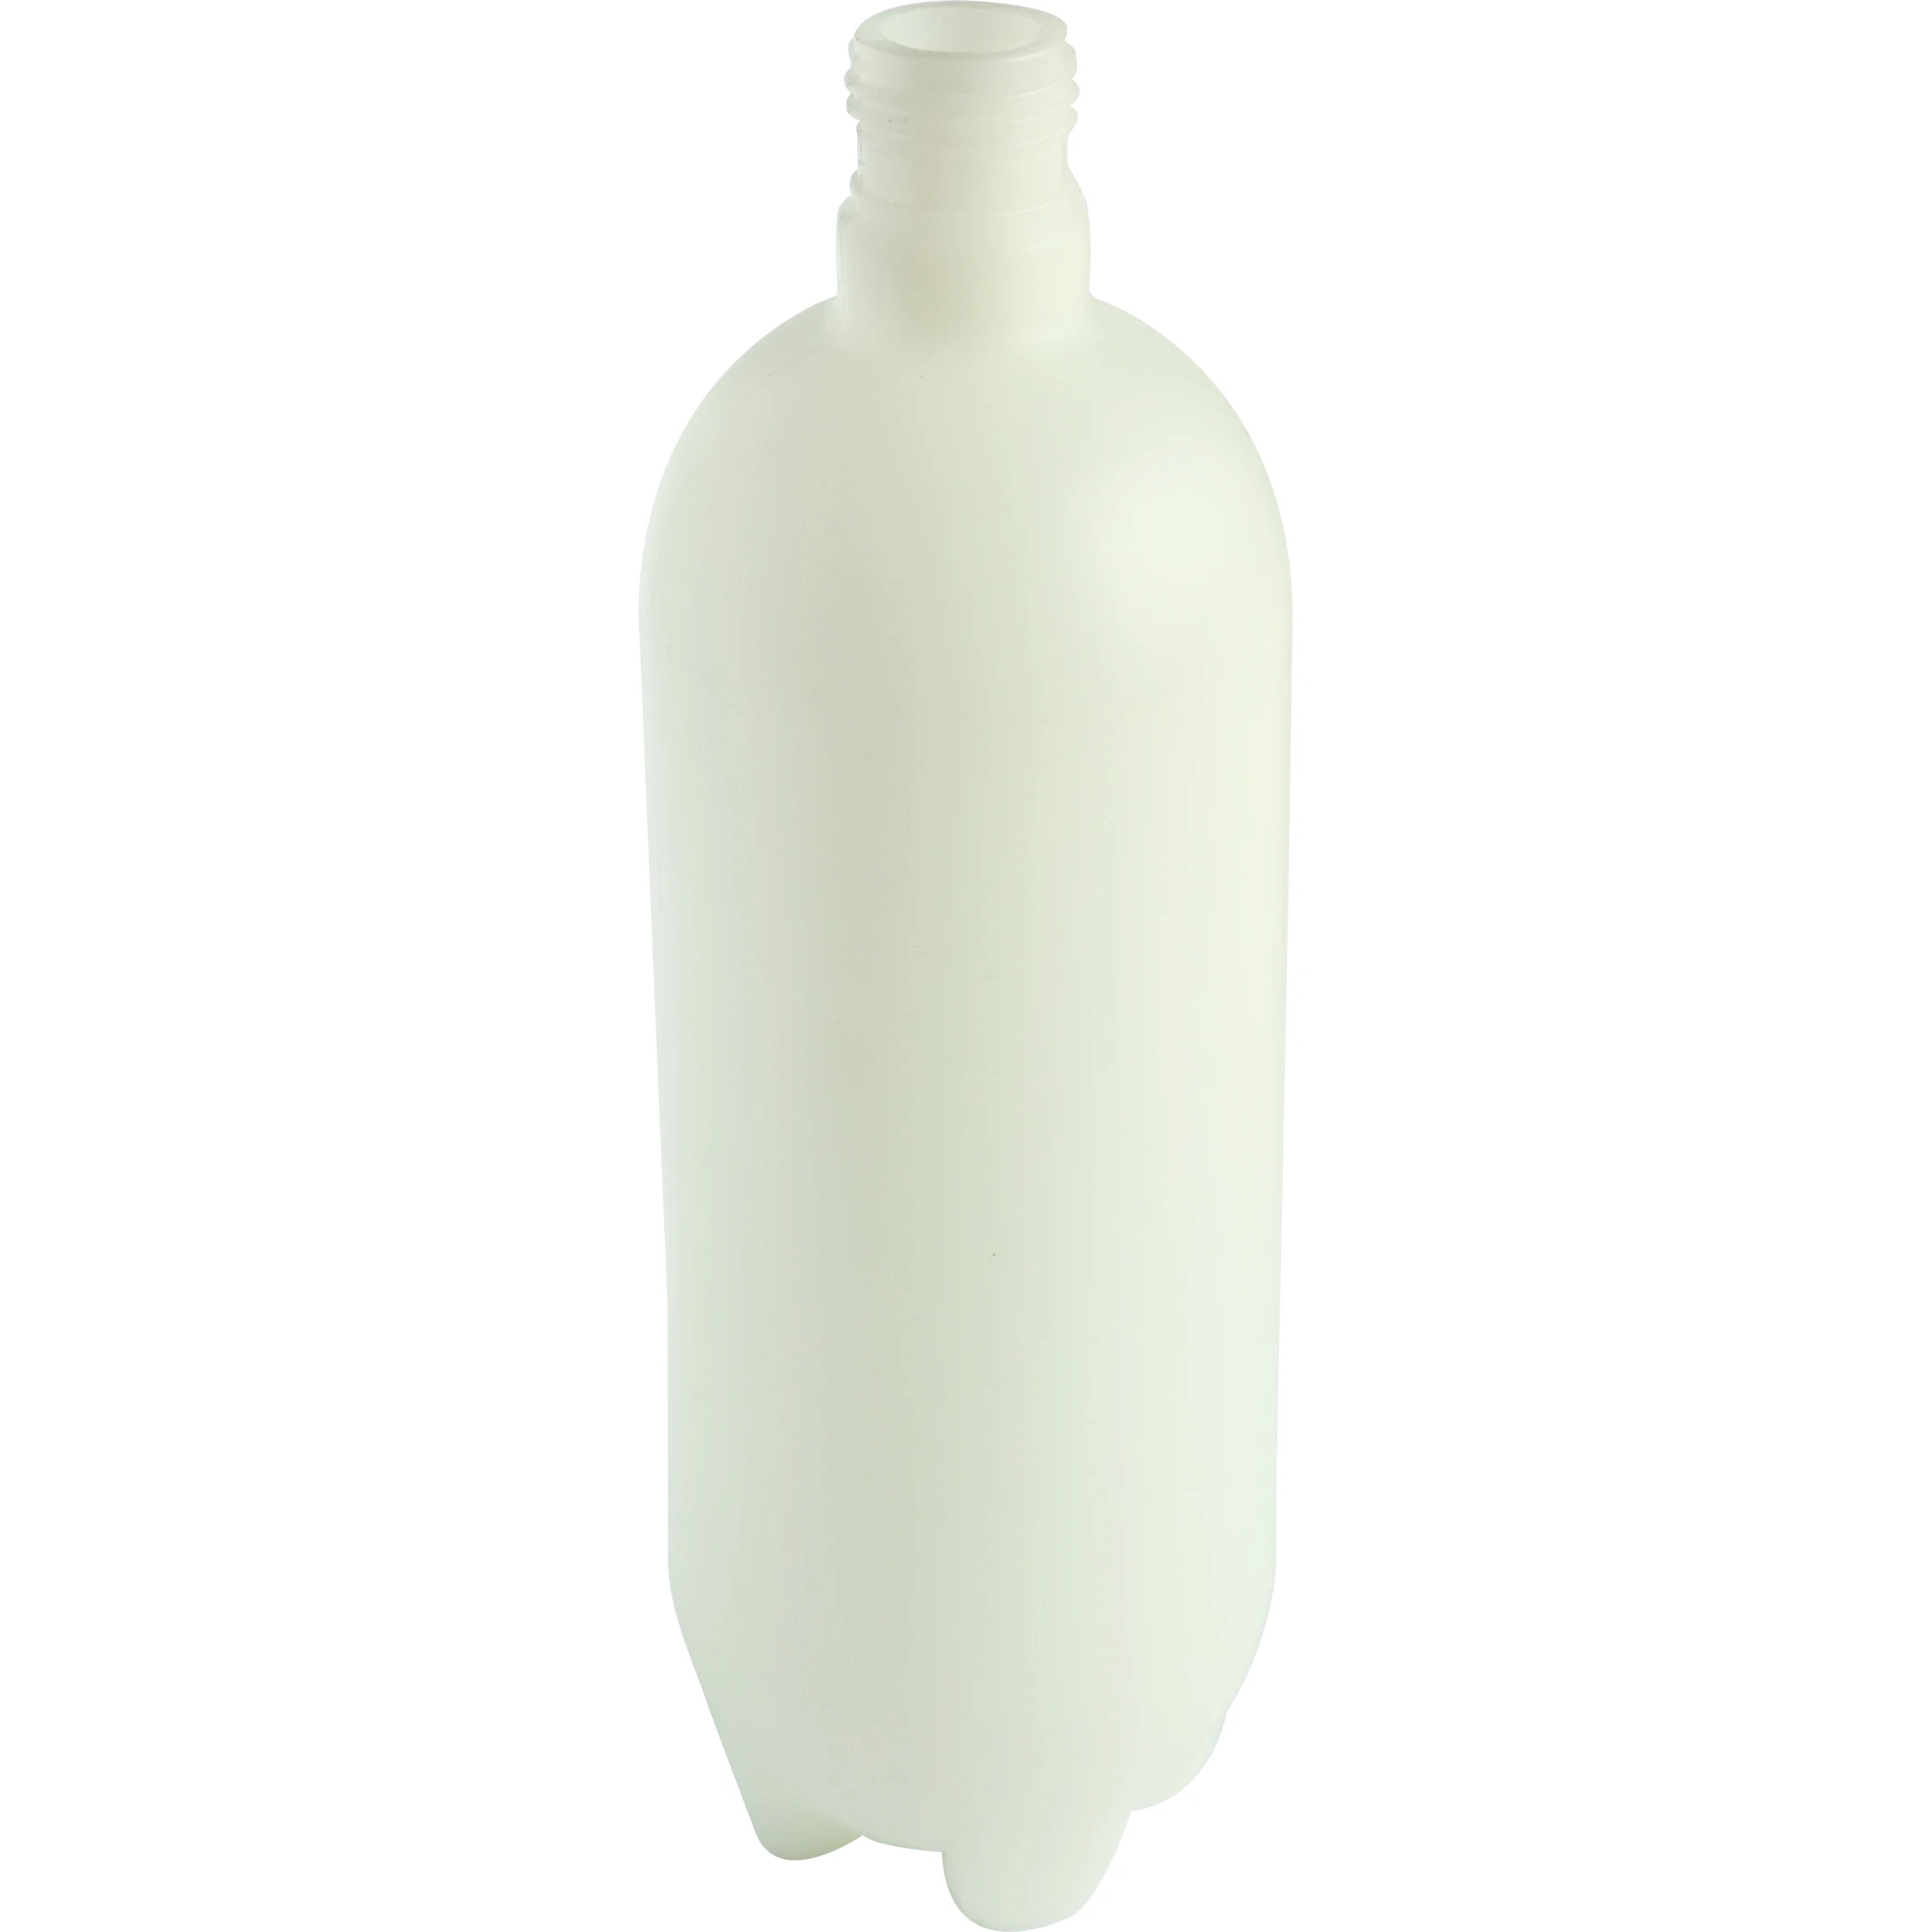 
dental chair water bottle 